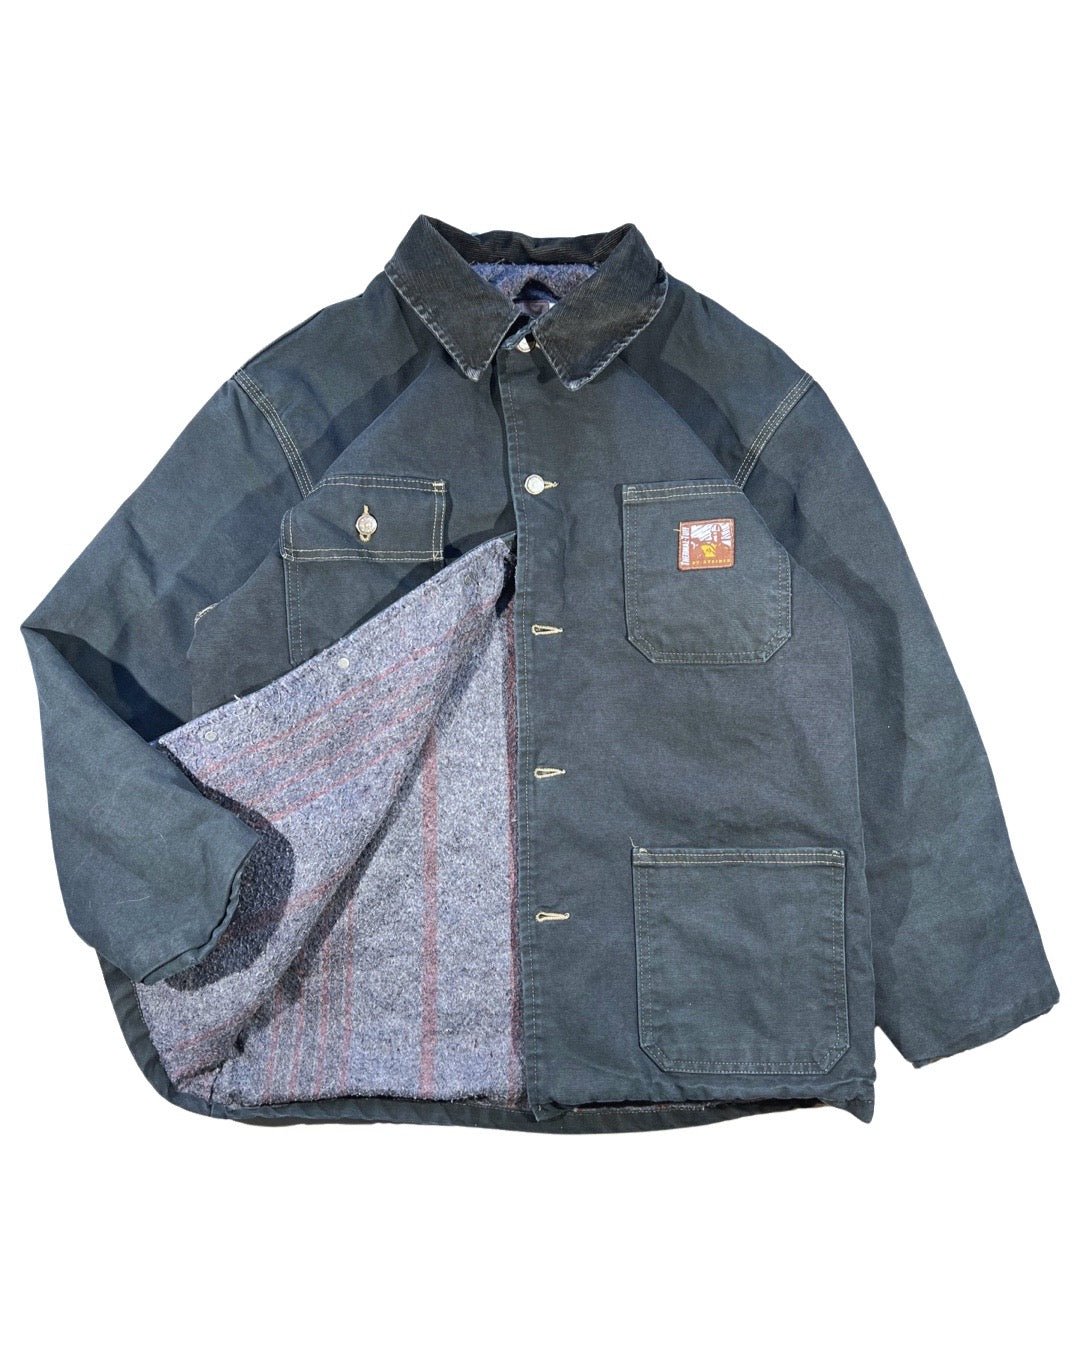 Vintage Work Jacket - L